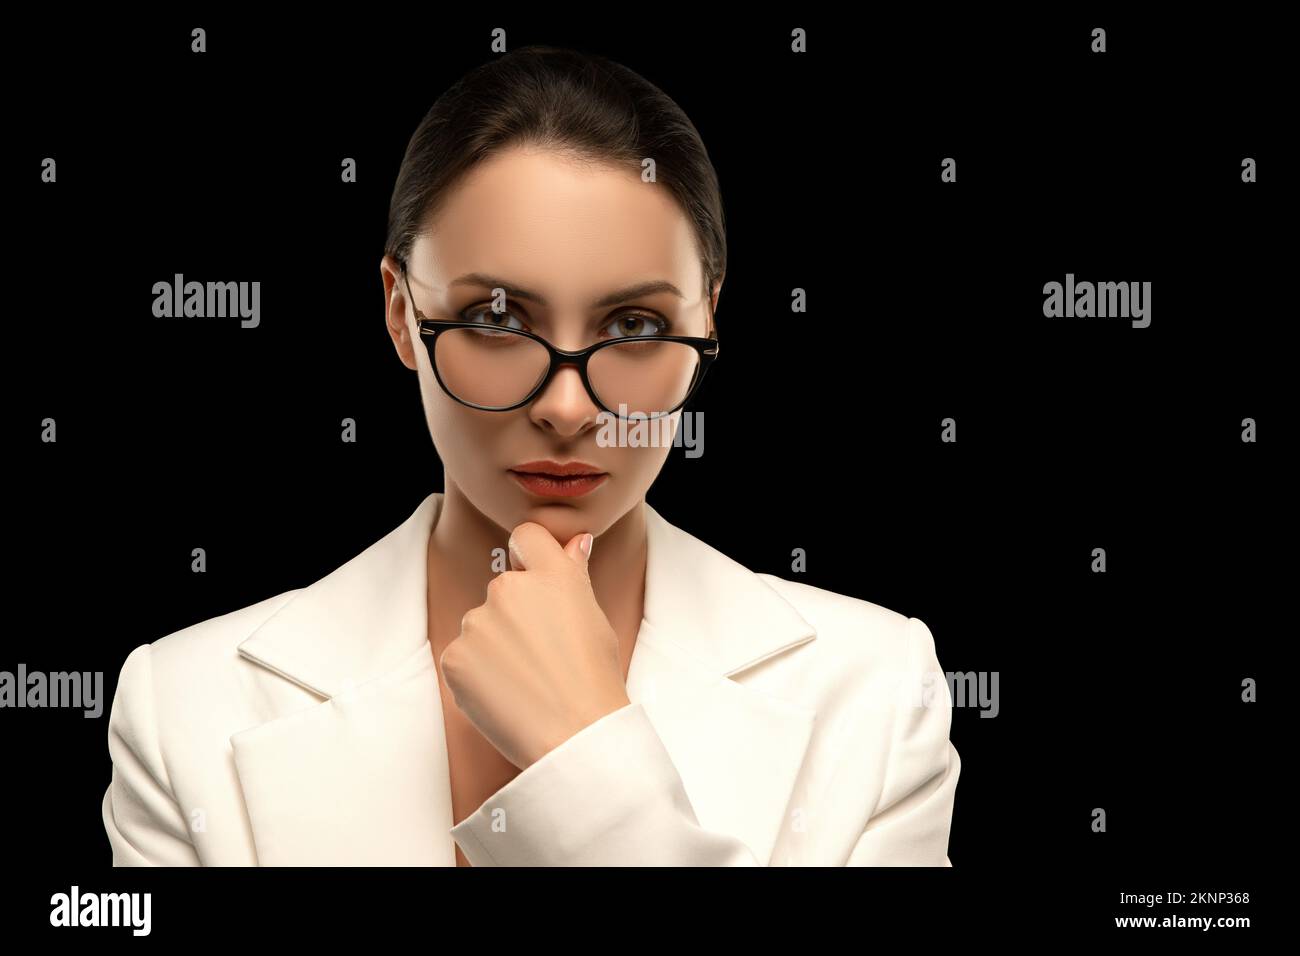 Dame patron. Femme caucasienne réussie en lunettes et costume blanc comme gestionnaire ou PDG dans la grande entreprise. Style corporatif. Concept de gestion. Un vrai wom Banque D'Images